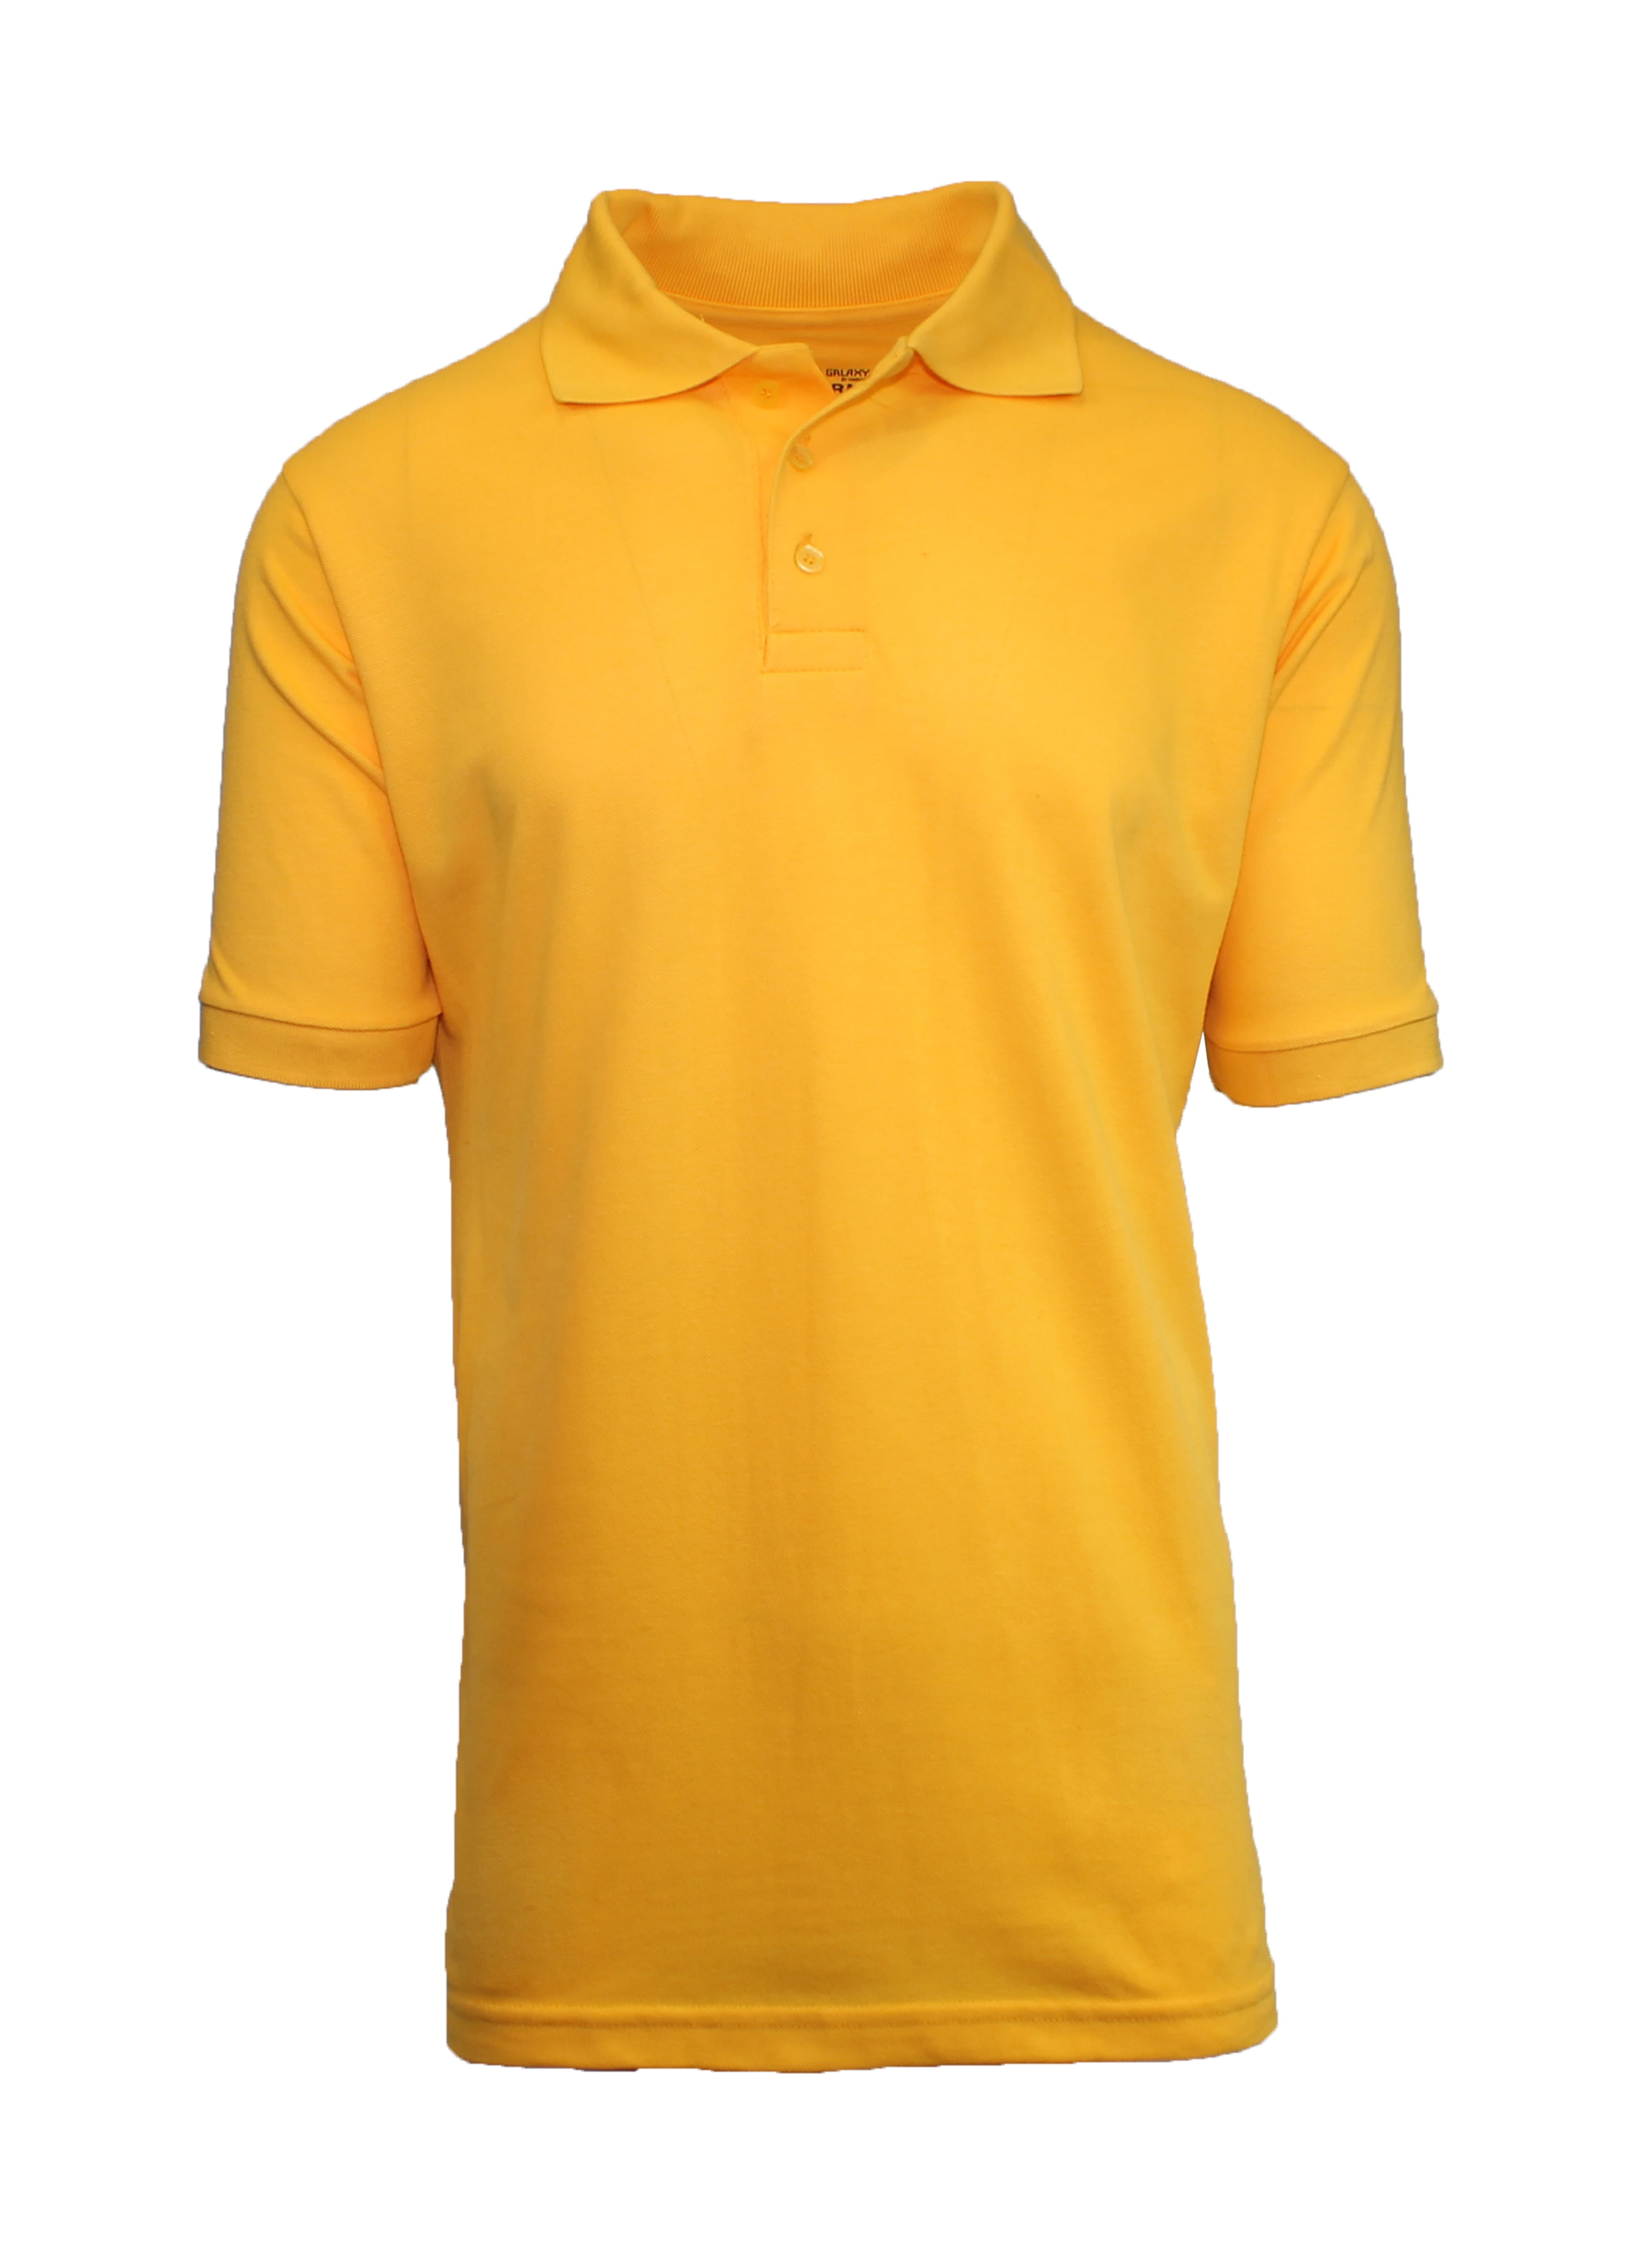 Men's Polo Shirt - Walmart.com